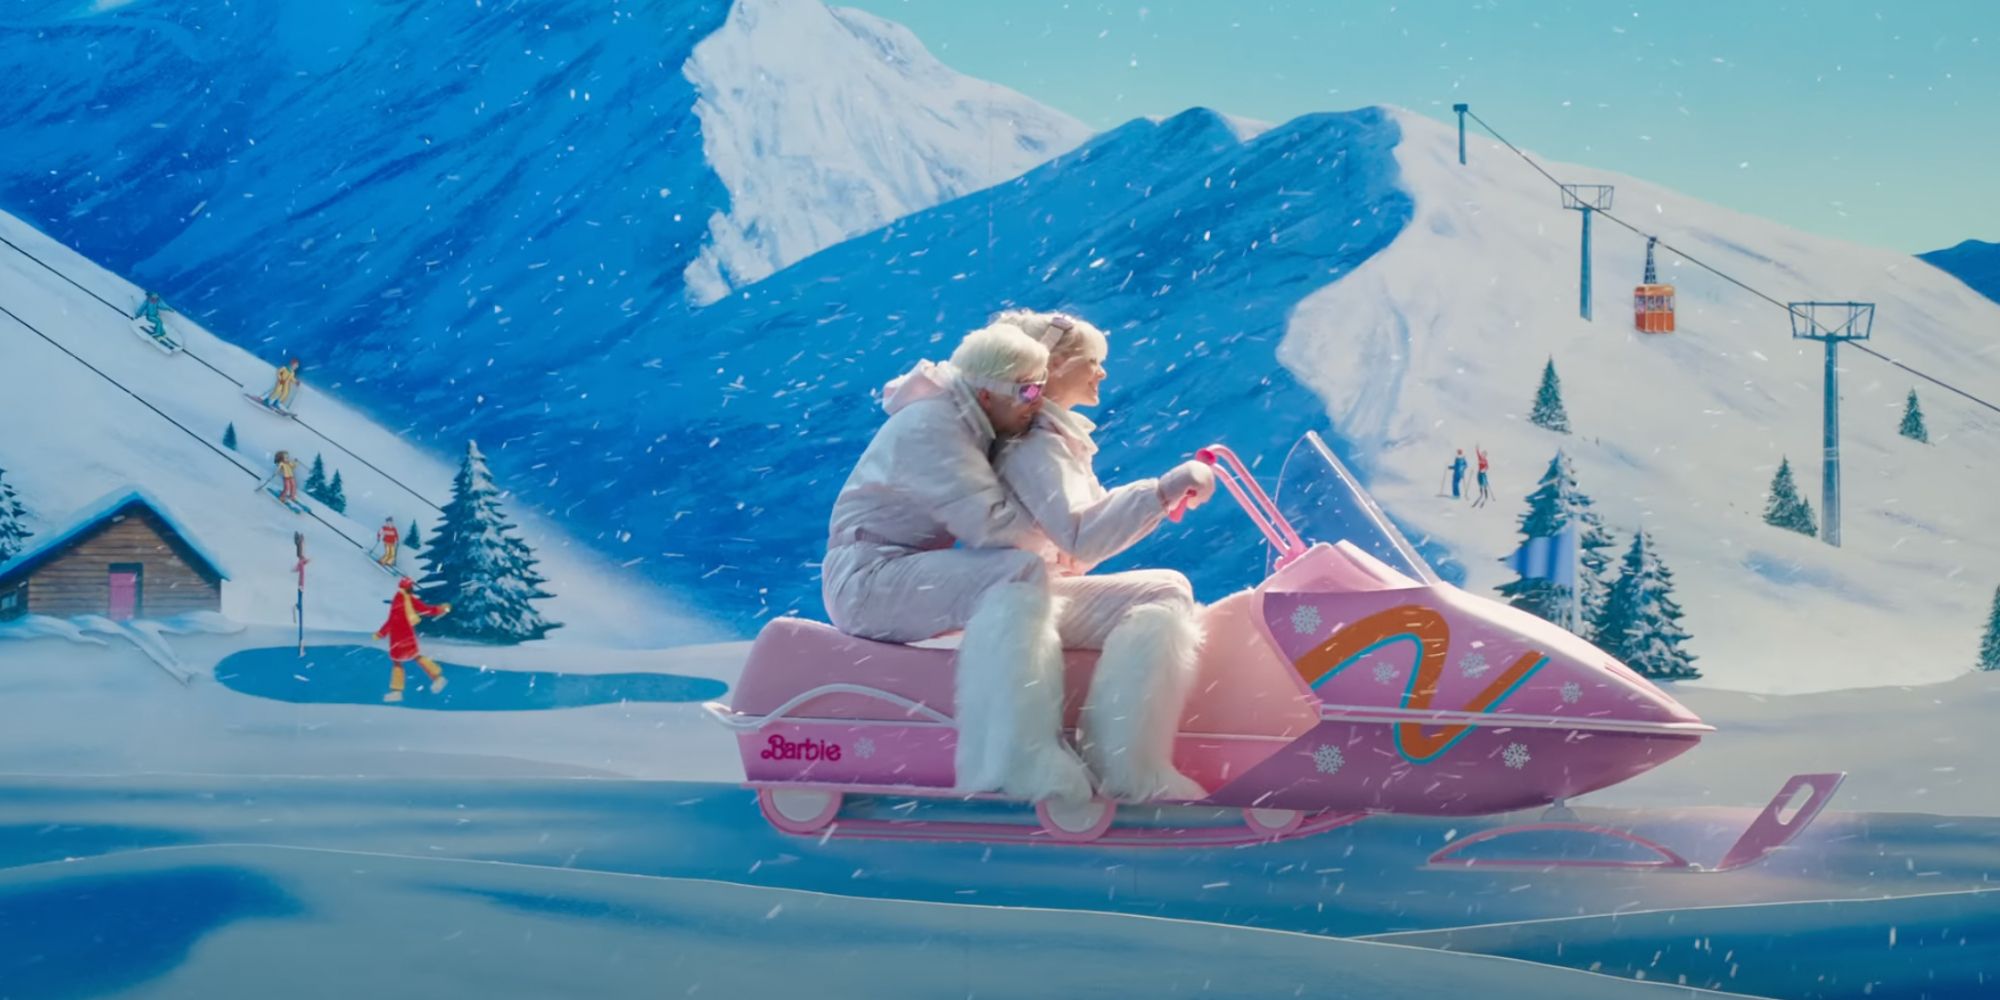 Barbie and Ken skiing in Barbie (2023)